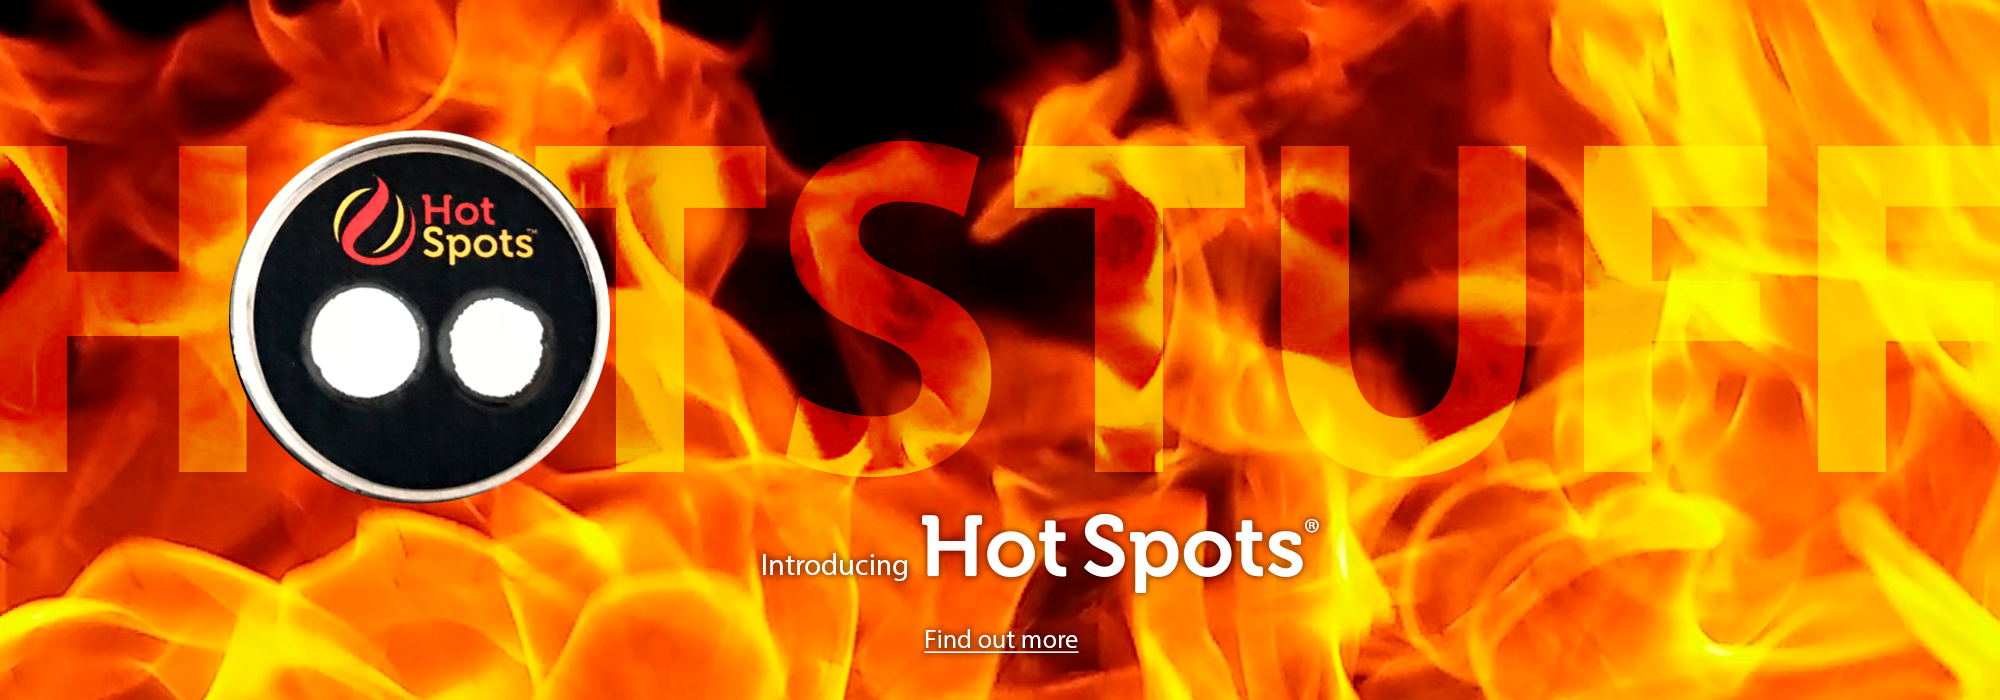 Hot-spots-slide-wide